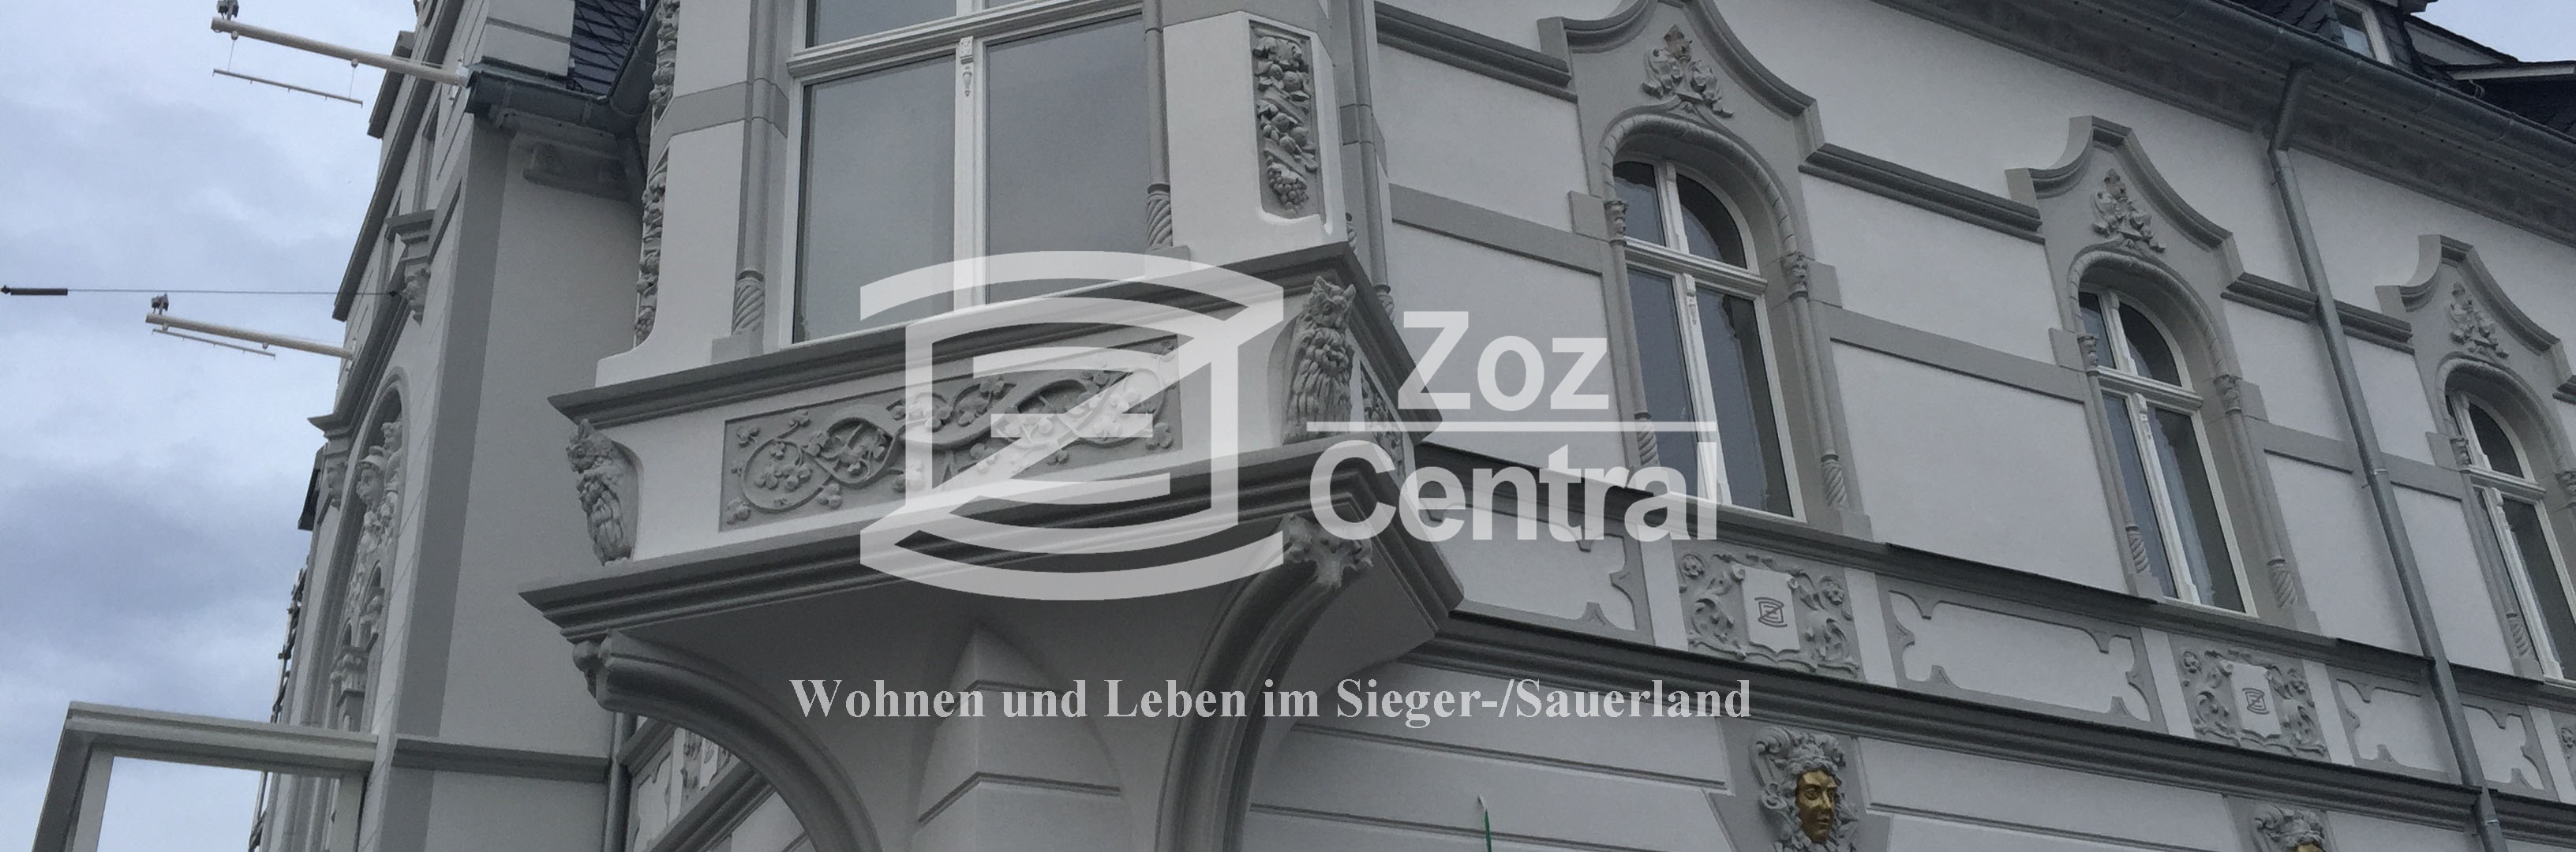 Zoz Central – Vermietung